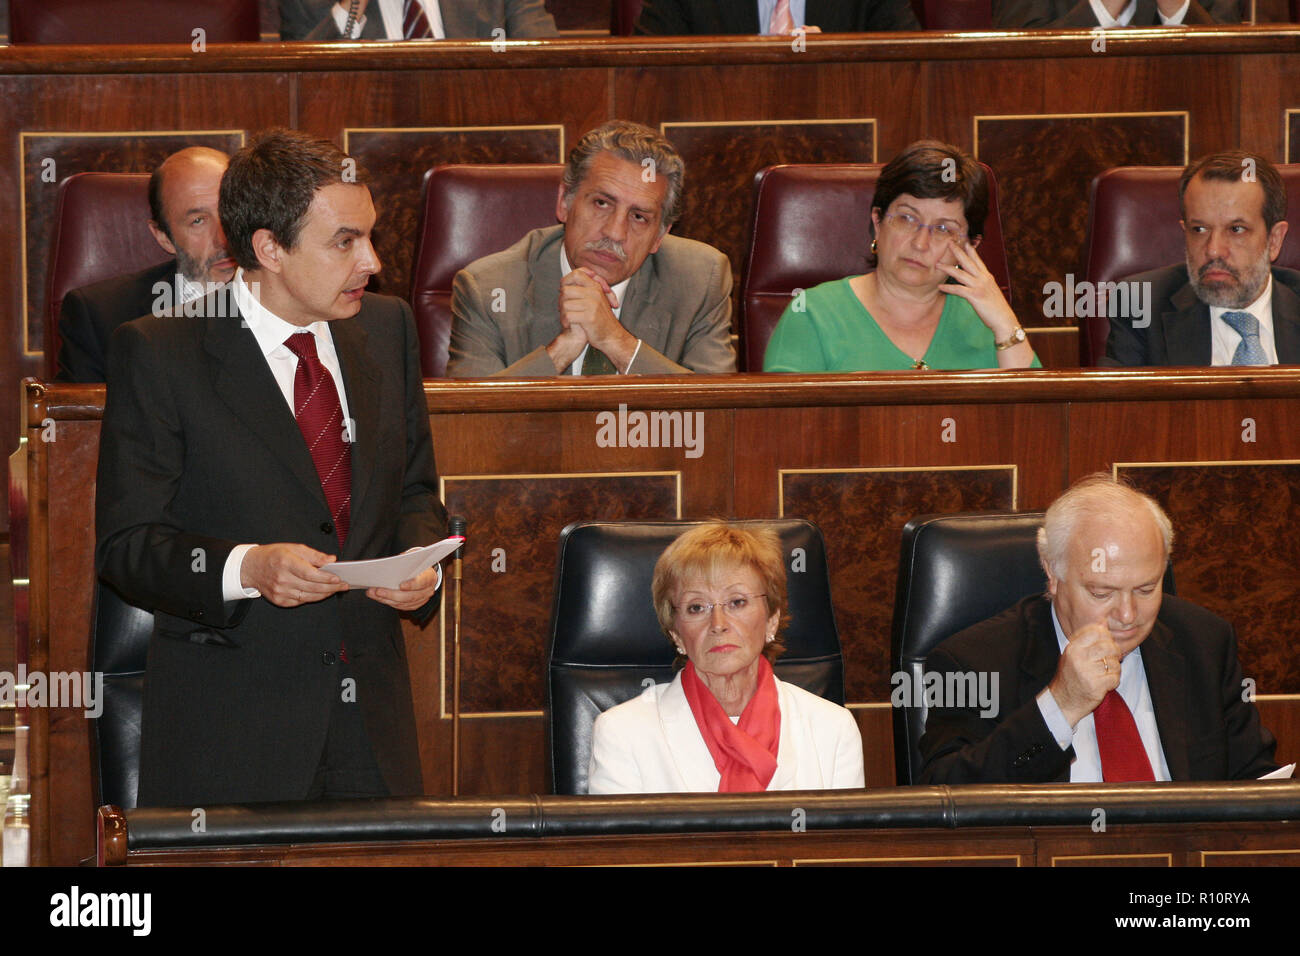 José Luís RODRIGUEZ ZAPATERO, PRESIDENTE DEL GOBIERNO tras ganar las elecciones de marzo del 2004, interviniendo durante una SESION DE CONTROL AL GOBIERNO, que se celebra los miércoles en el CONGRESO DE DIPUTADOS. A su lado, la VICEPRESIDENTA, Mª Teresa FDEZ. DE LA VEGA y M. A. MORATINOS, MINISTRO DE ASUNTOS EXTERIORES Y COOPERACION. Madrid, 25 de mayo del 2005. Stock Photo